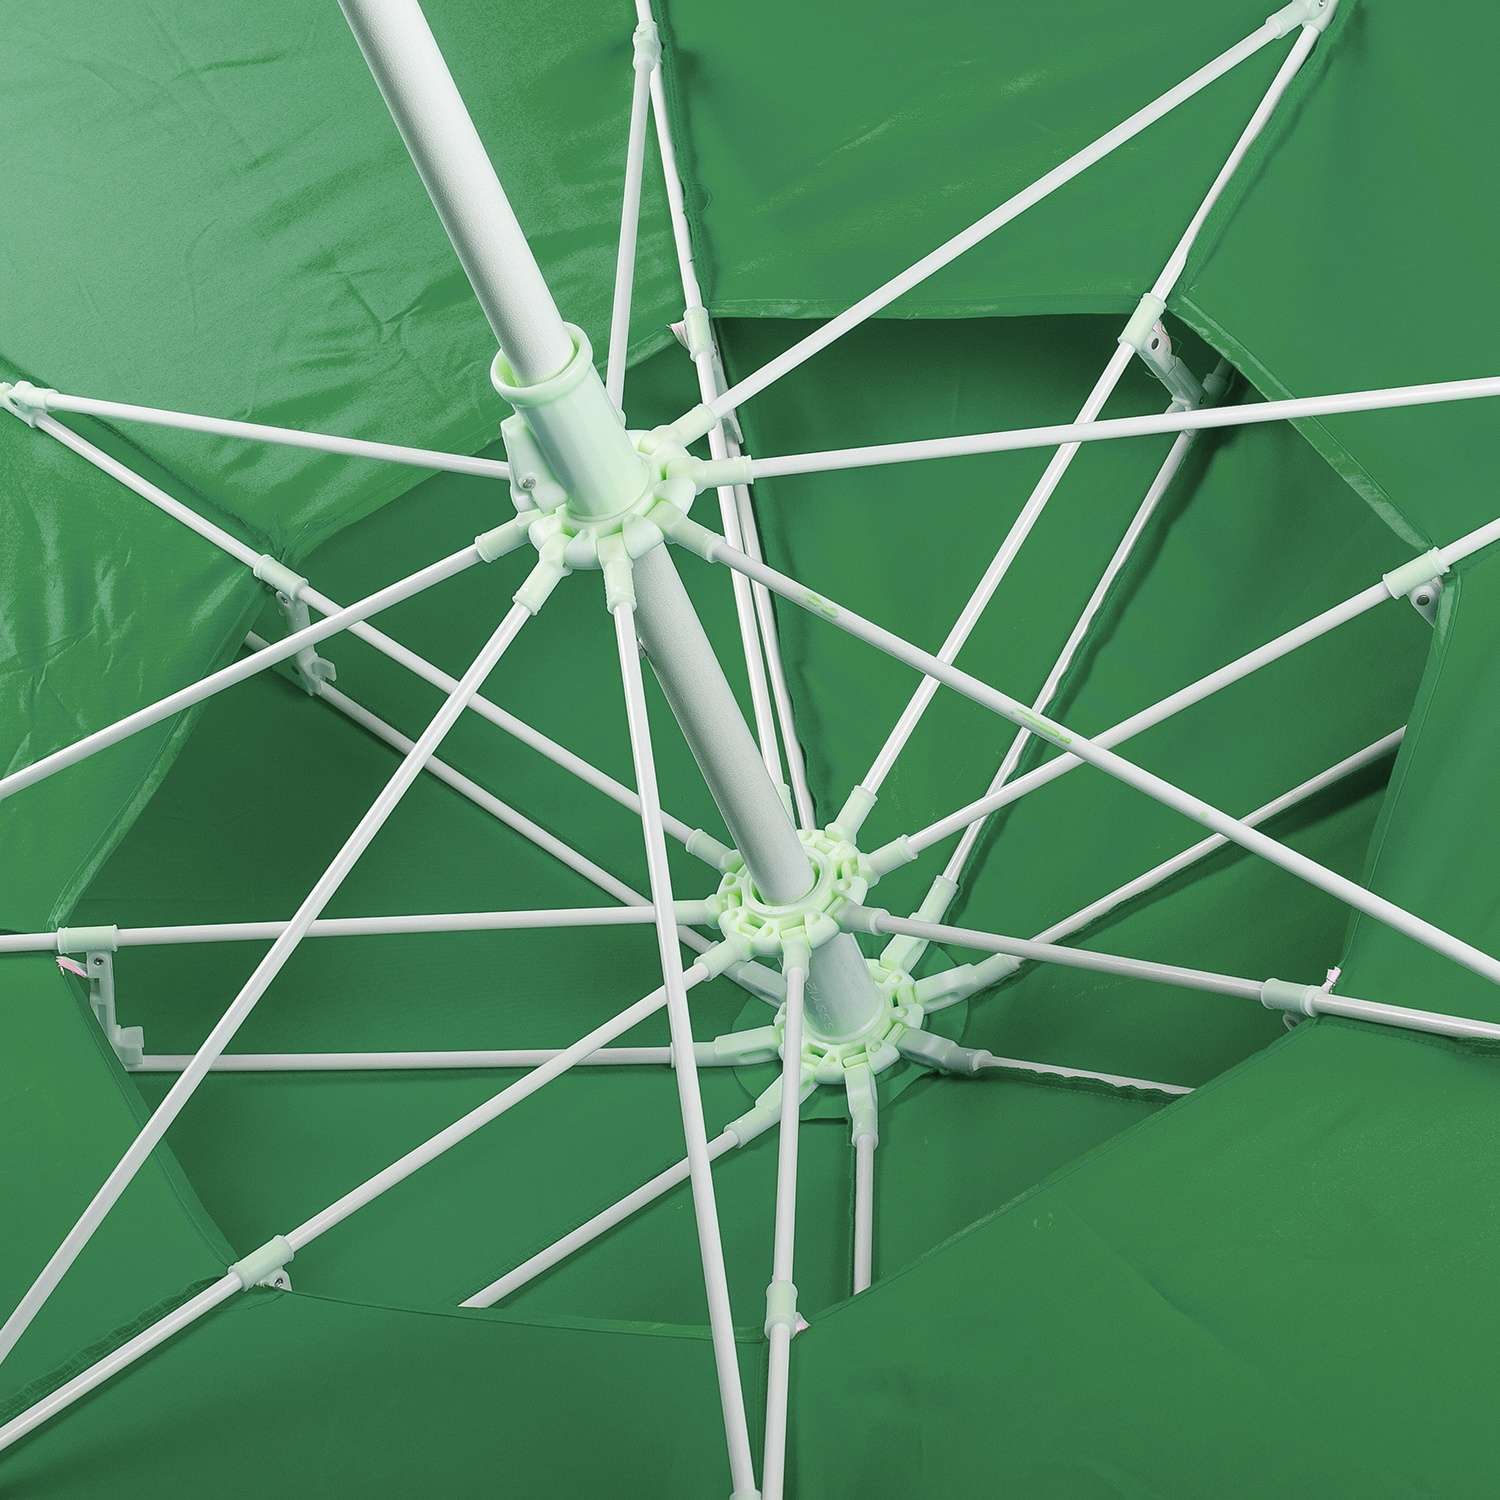 Зонт пляжный BABY STYLE большой с двойным клапаном 2.7 м зеленый - фото 4